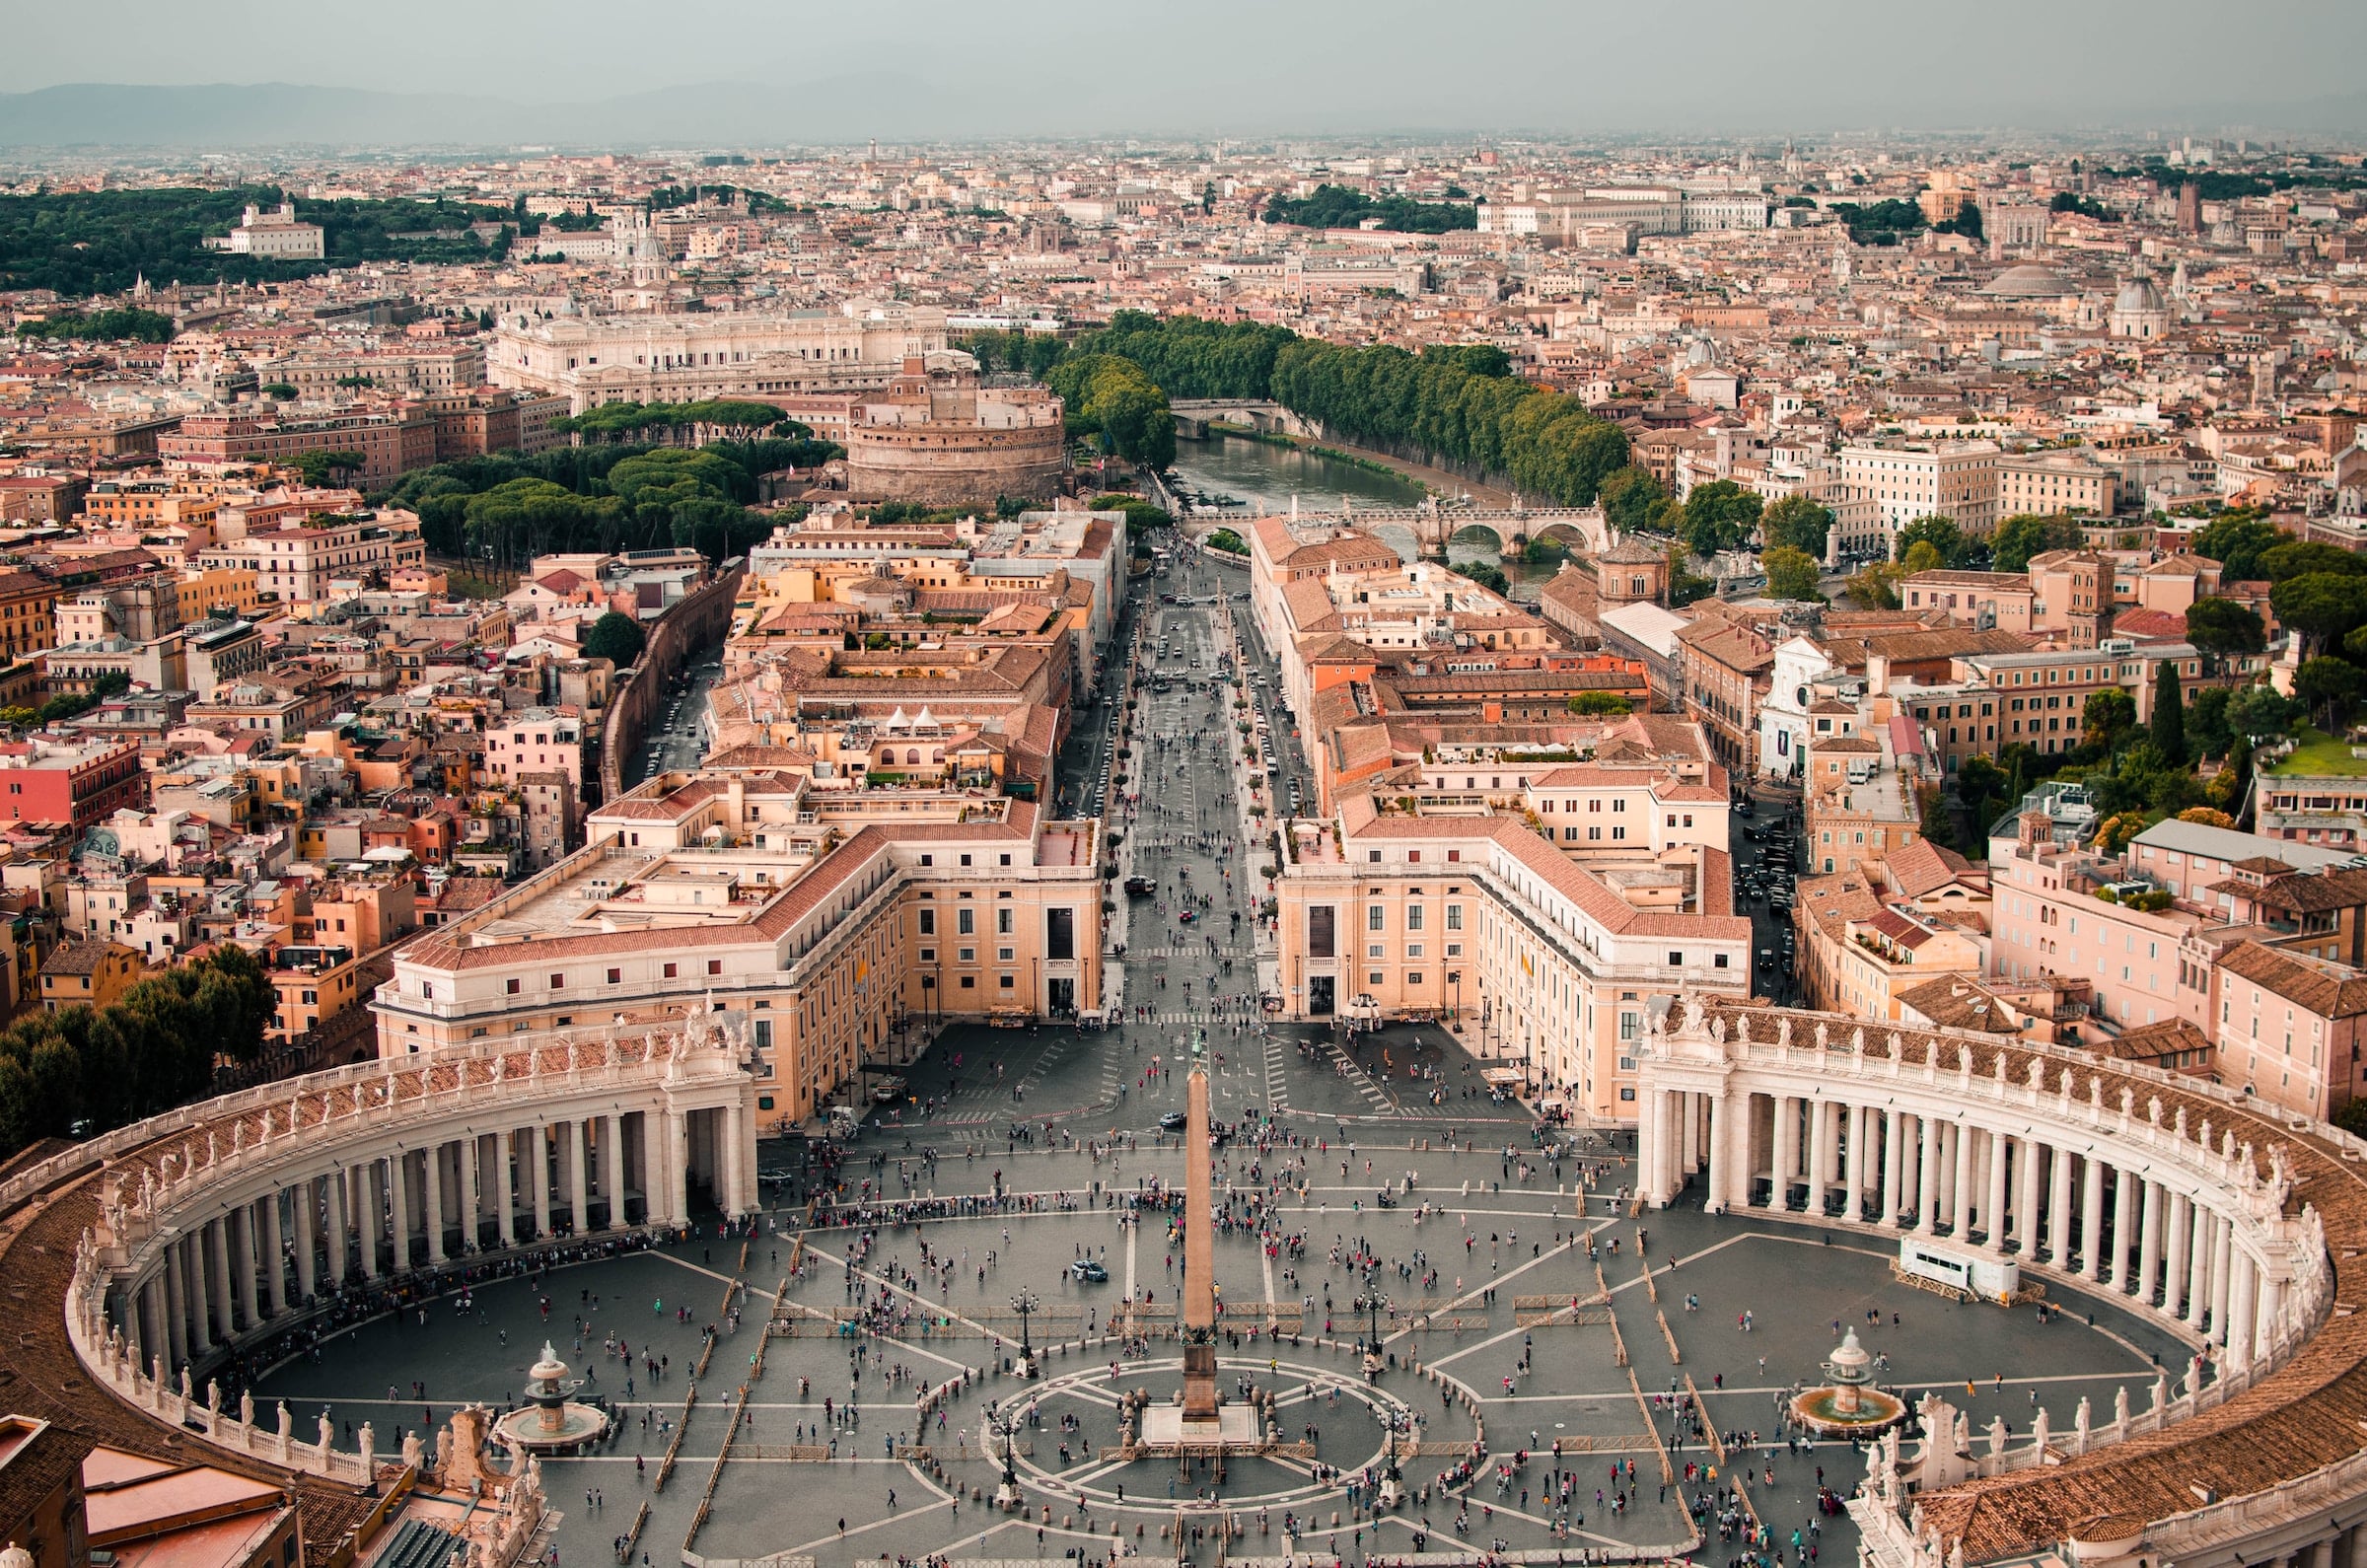 أصغر دولة في العالم من حيث مساحة الأرض هي مدينة الفاتيكان